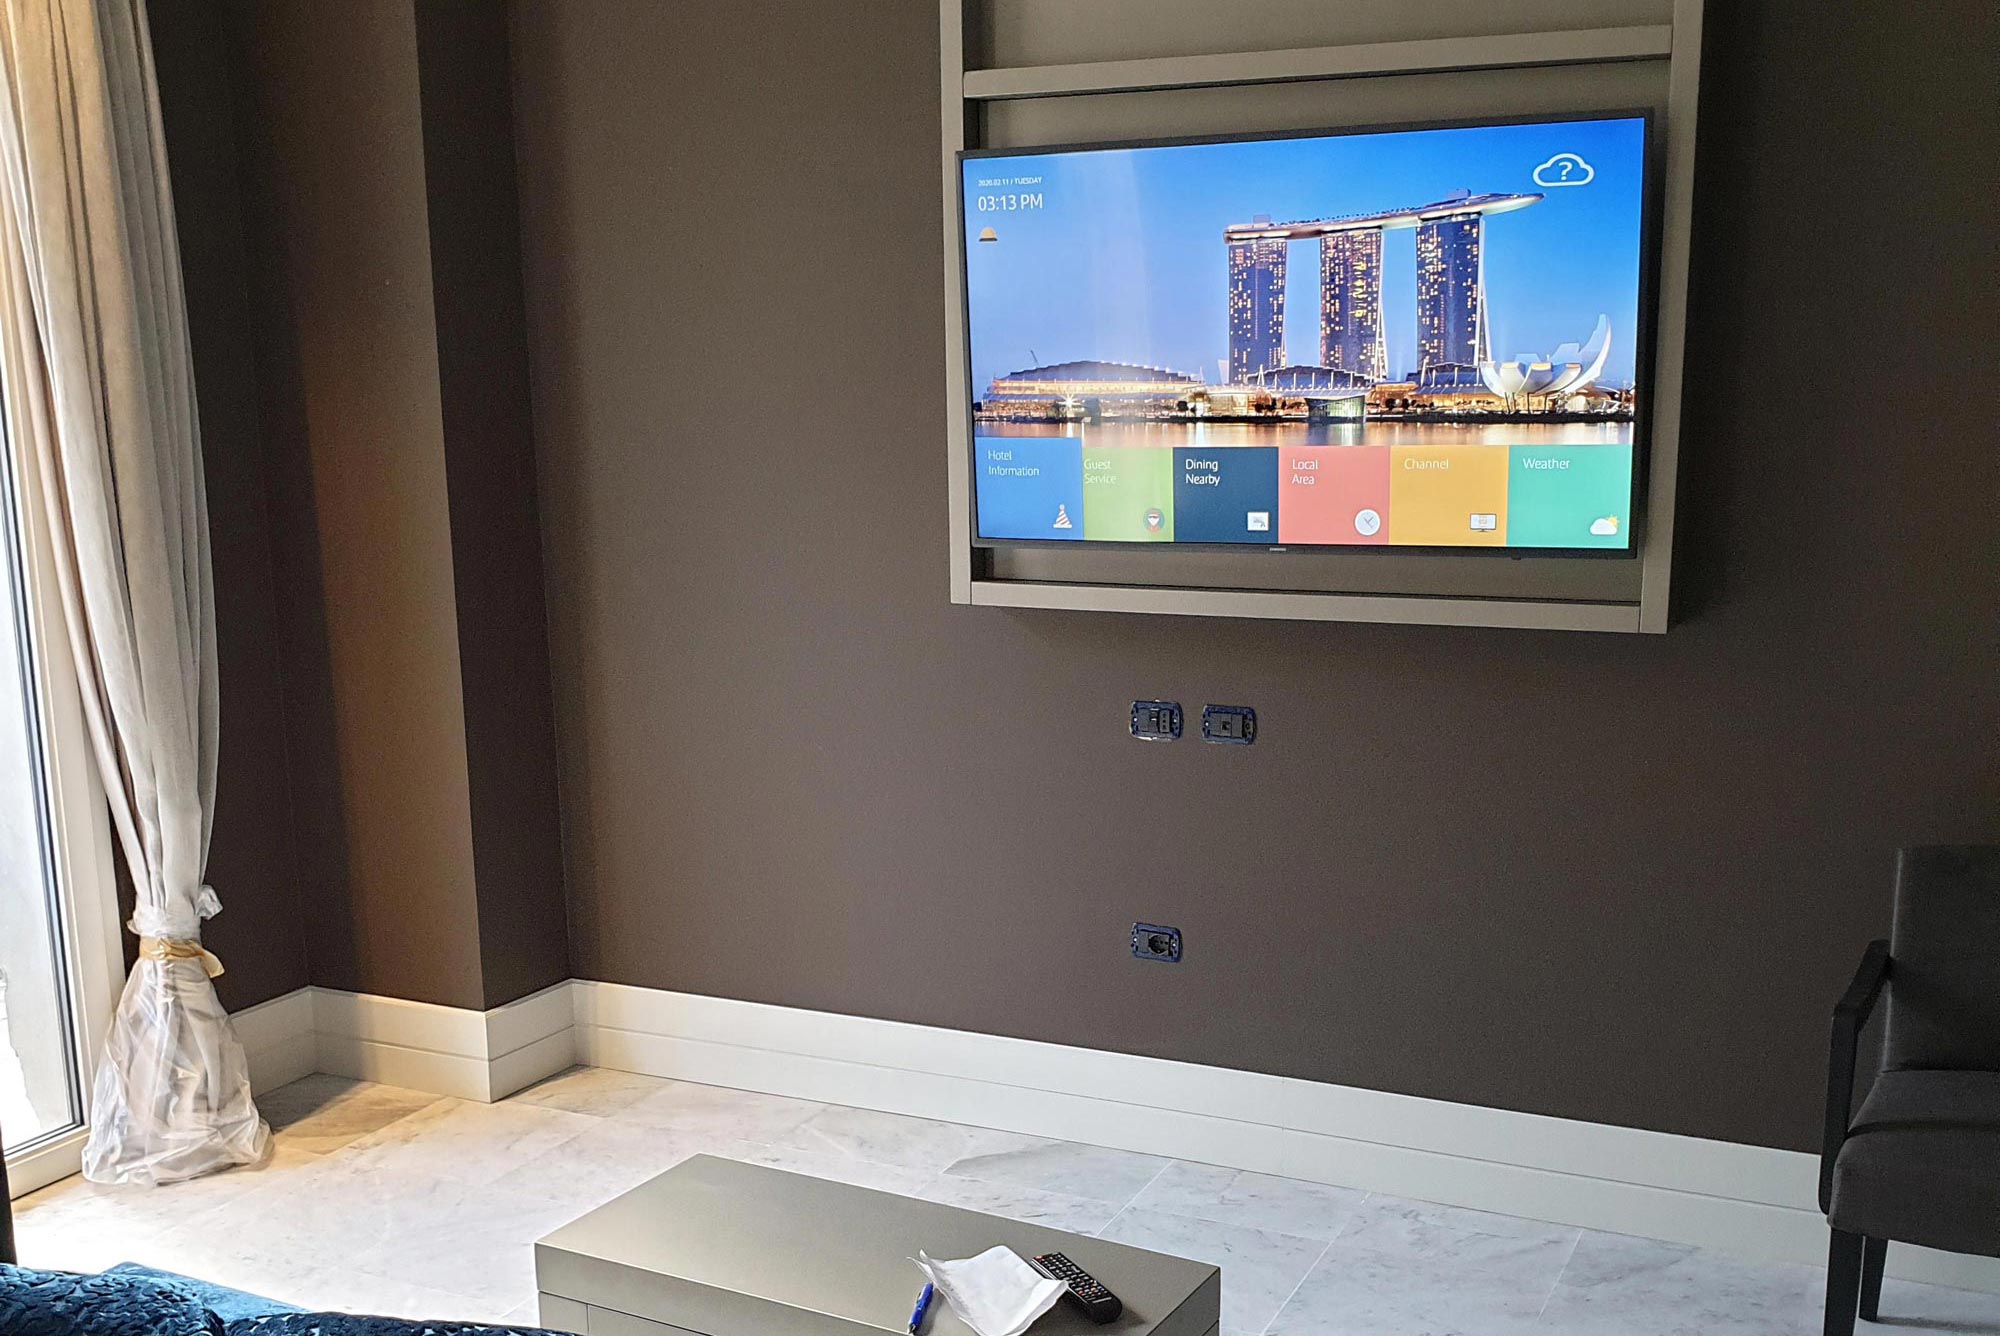 Samsung Hotel TV installato a parete con cornice in tinta con l'arredamento